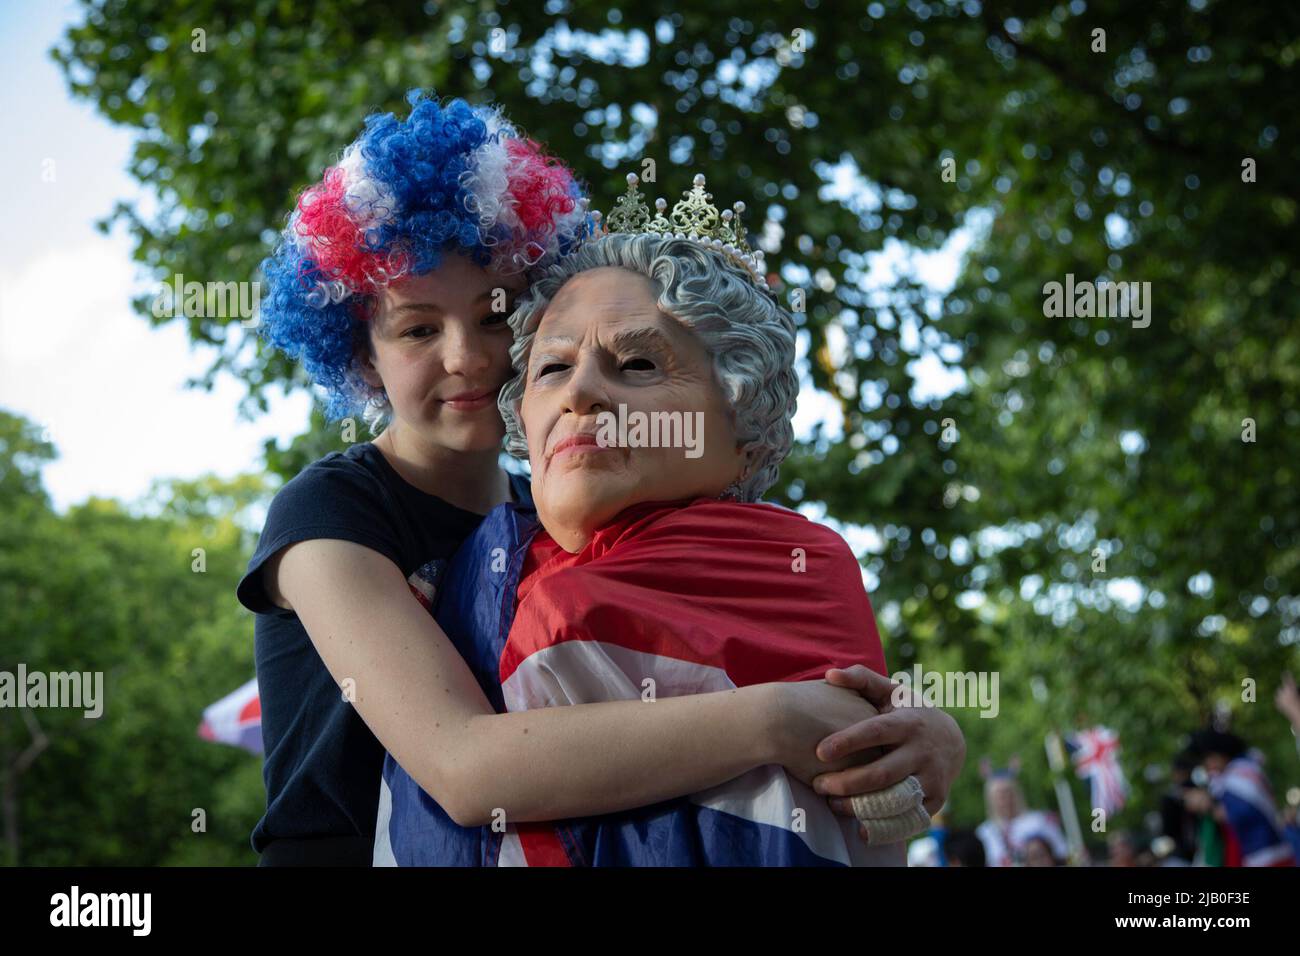 London, Großbritannien. Ist Juni 2022. Ein Mädchen umarmt ihren kleinen Bruder, der als Königin verkleidet ist, da königliche Fans rechtzeitig zum morgigen Platin-Jubiläum in die Mall gekommen sind, um die 70 Jahre auf dem Thron von Königin Elizabeth II zu feiern. Quelle: Kiki Streitberger / Alamy Live News Stockfoto